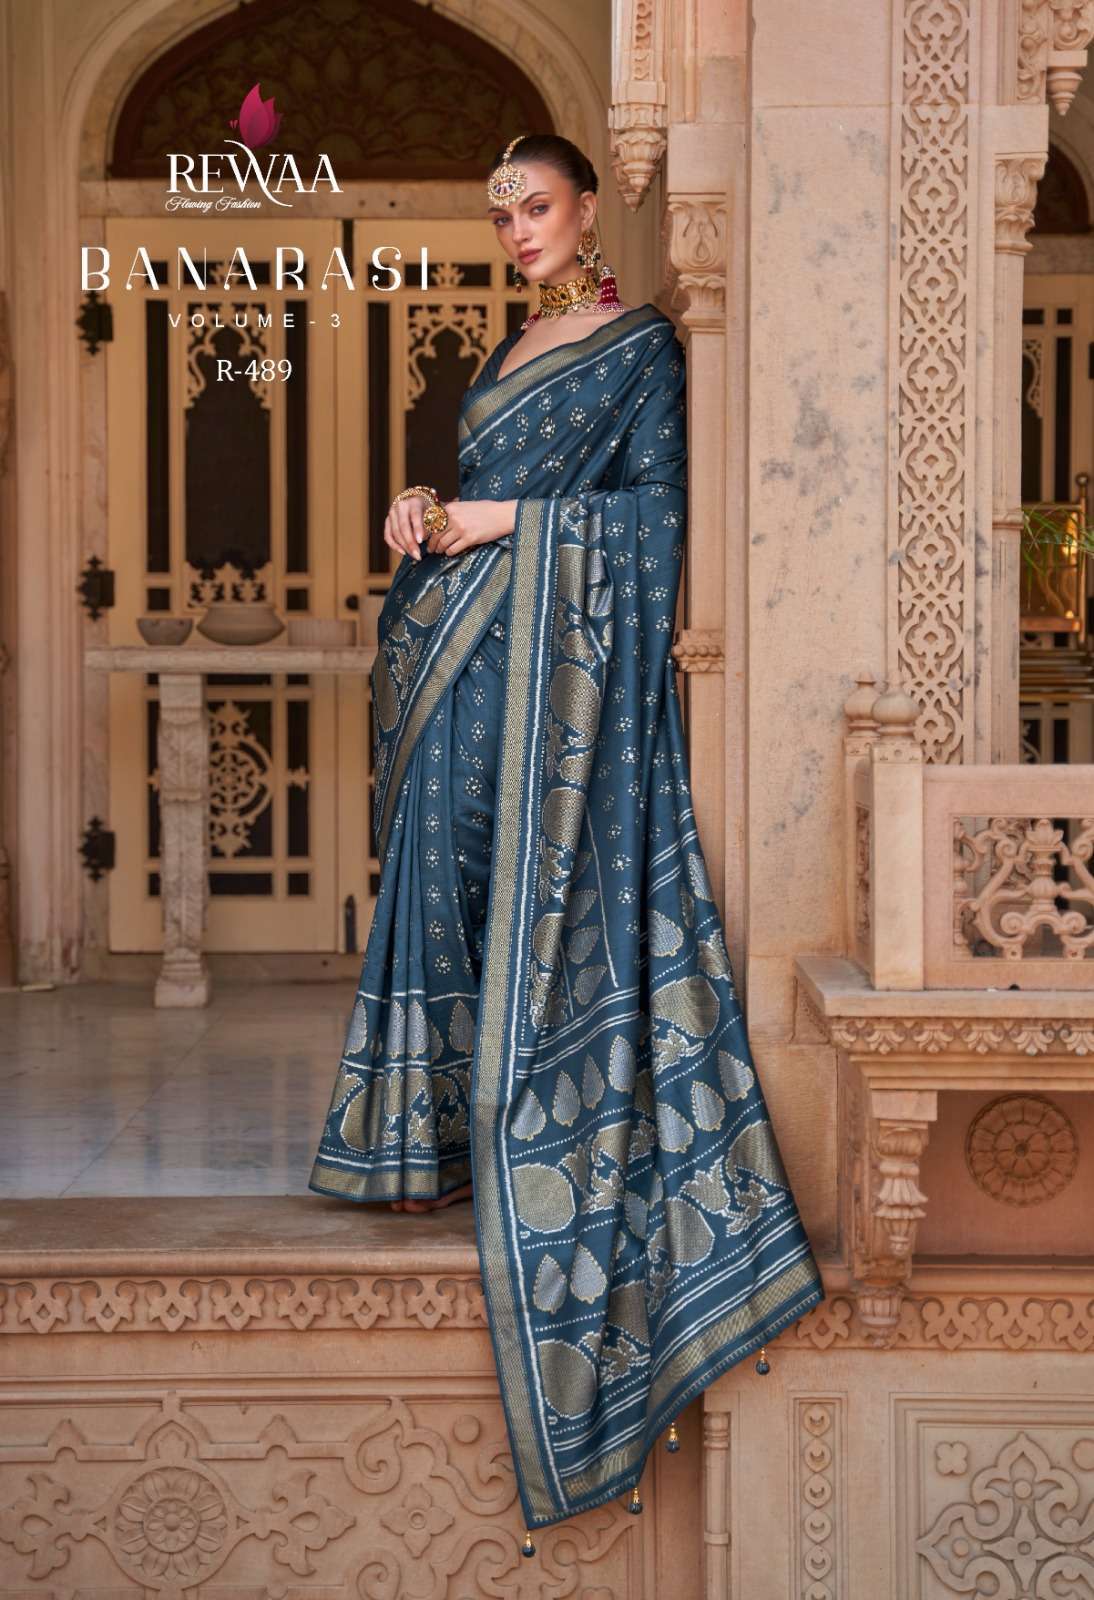 rewaa banarasi vol 3 series 487-489 smooth silk saree